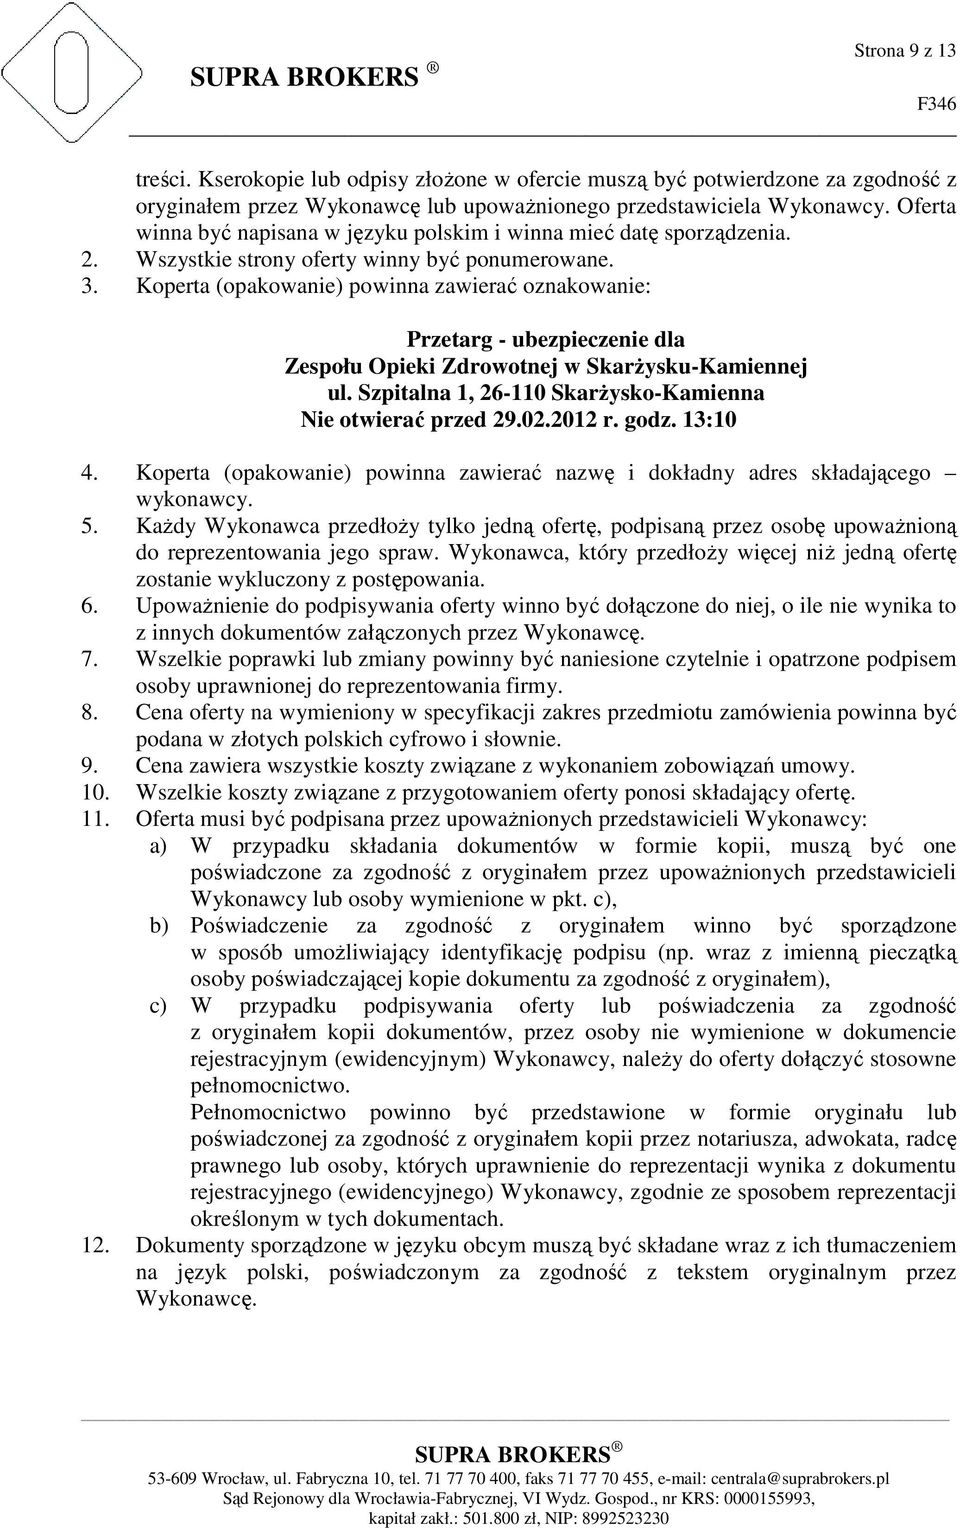 Koperta (opakowanie) powinna zawierać oznakowanie: Przetarg - ubezpieczenie dla Zespołu Opieki Zdrowotnej w Skarżysku-Kamiennej ul. Szpitalna 1, 26-110 Skarżysko-Kamienna Nie otwierać przed 29.02.